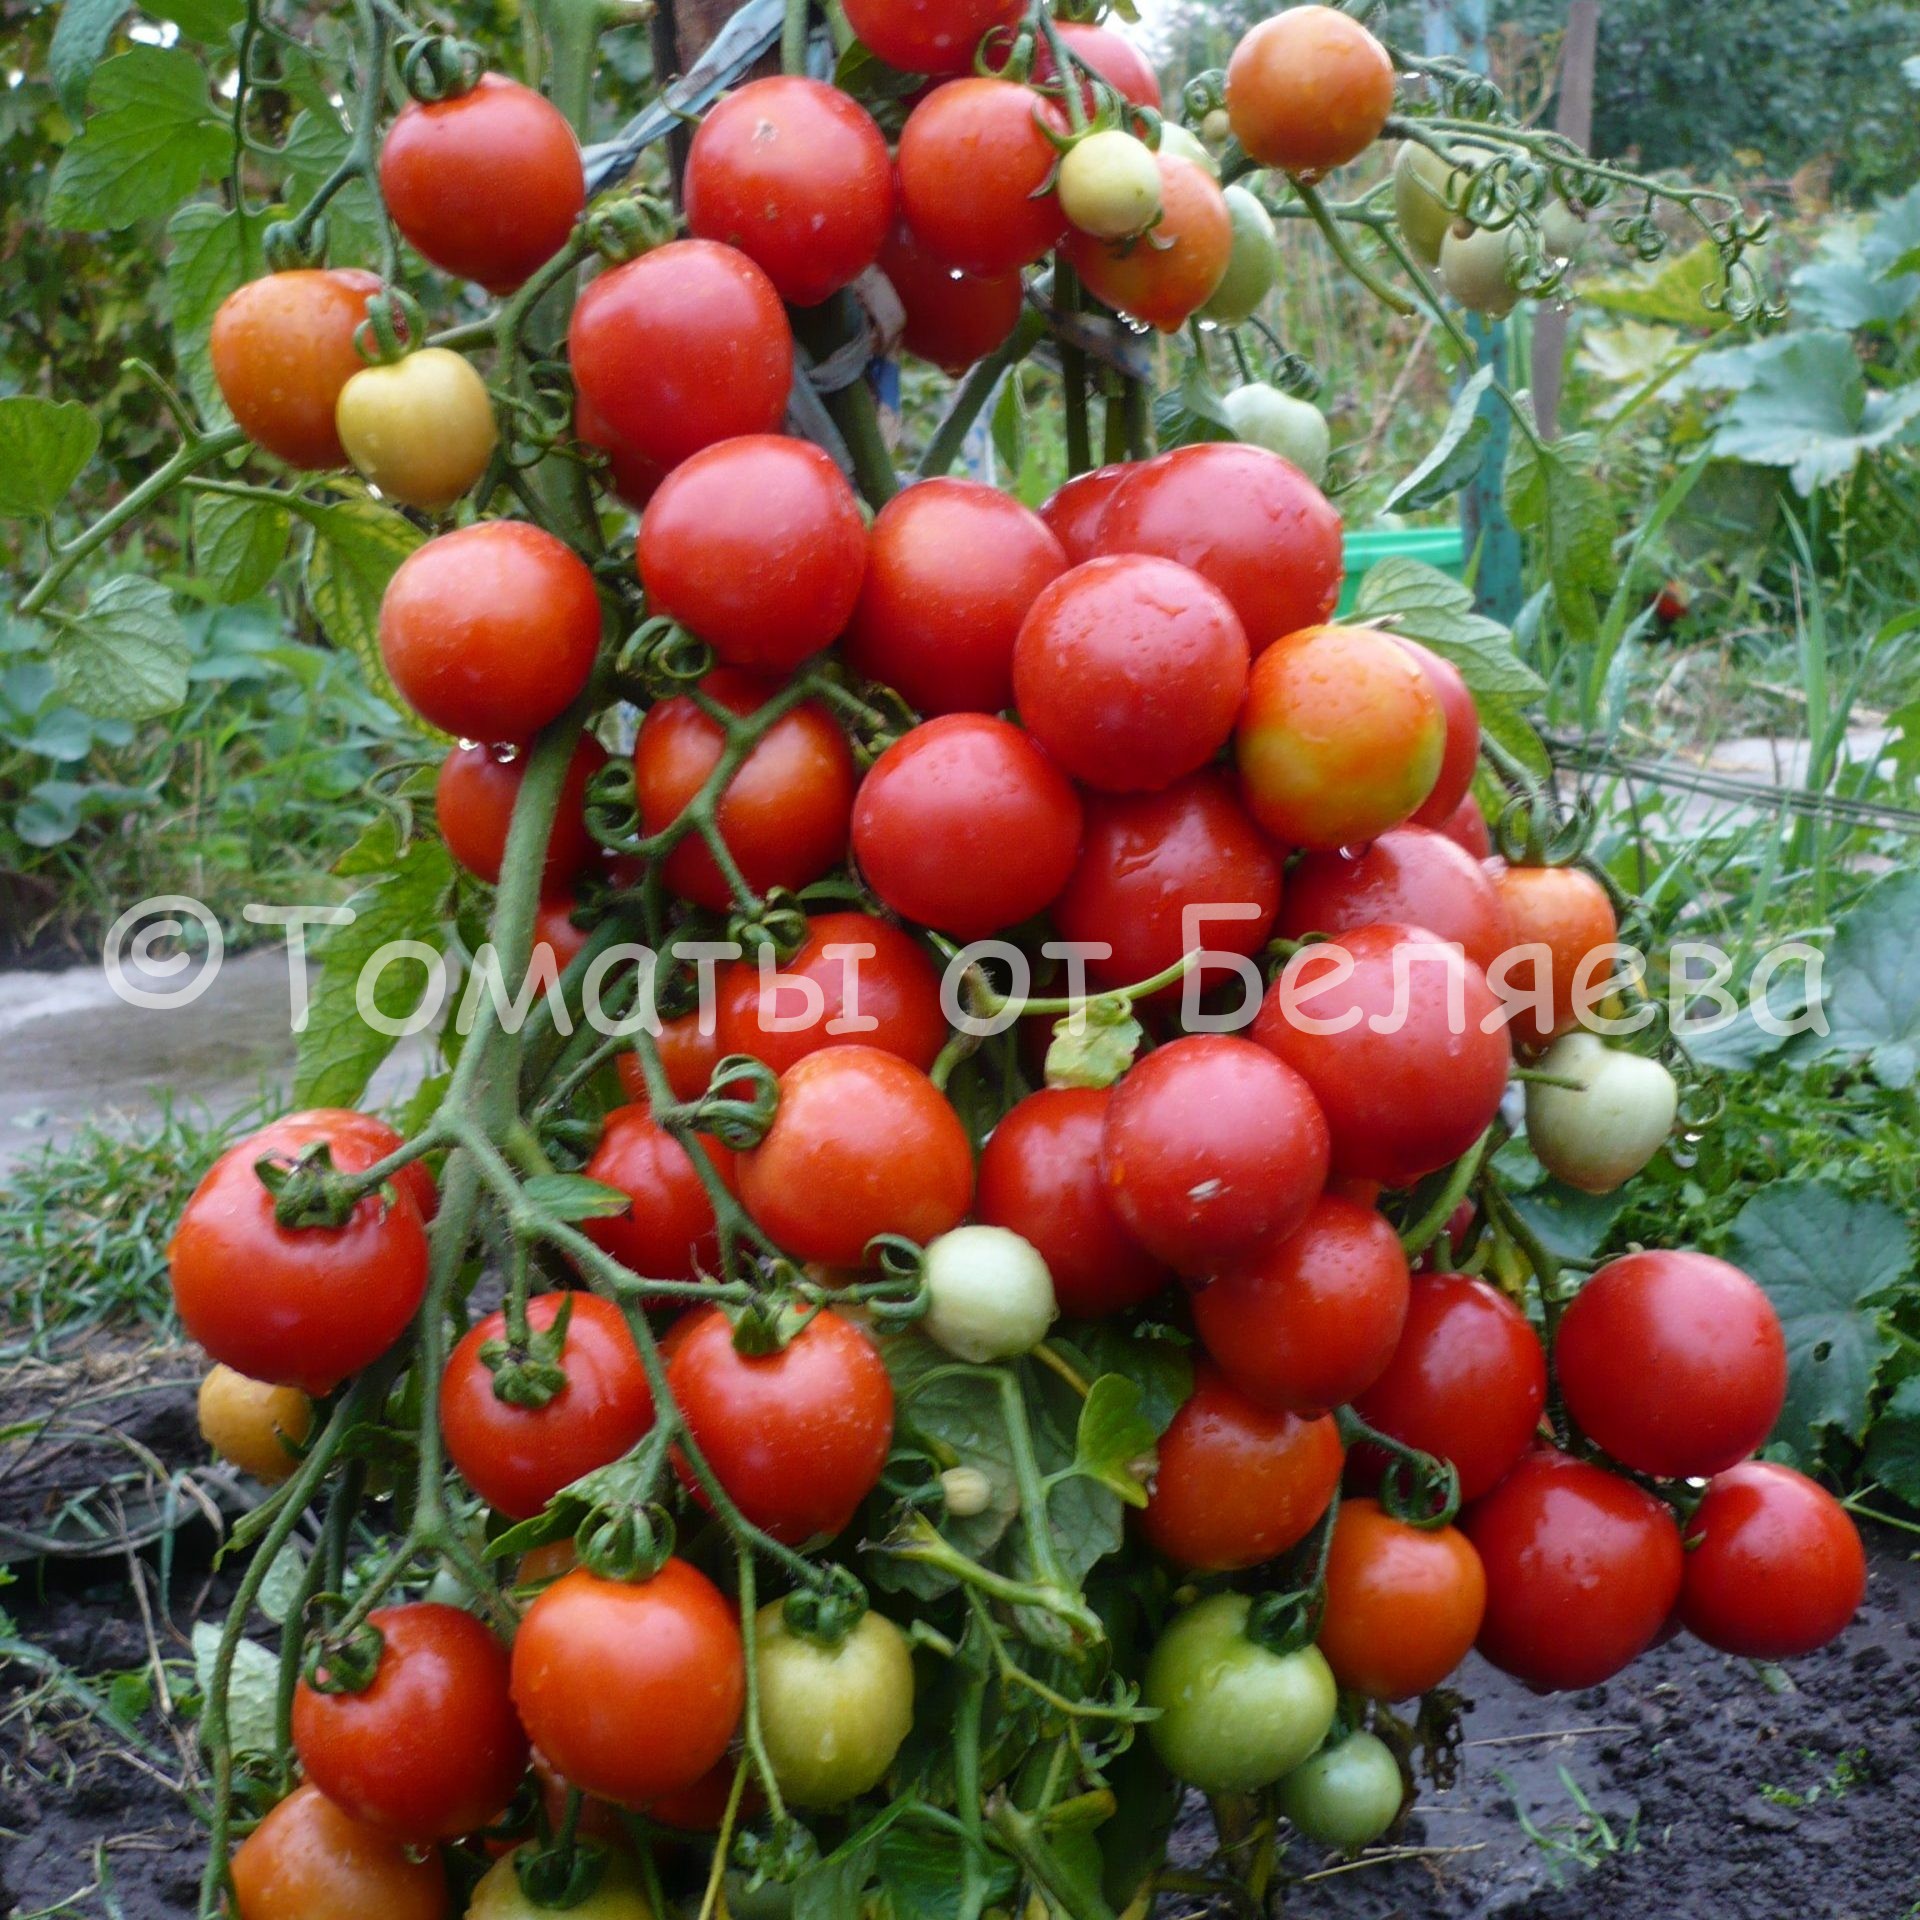 Как вырастить томаты от Беляева